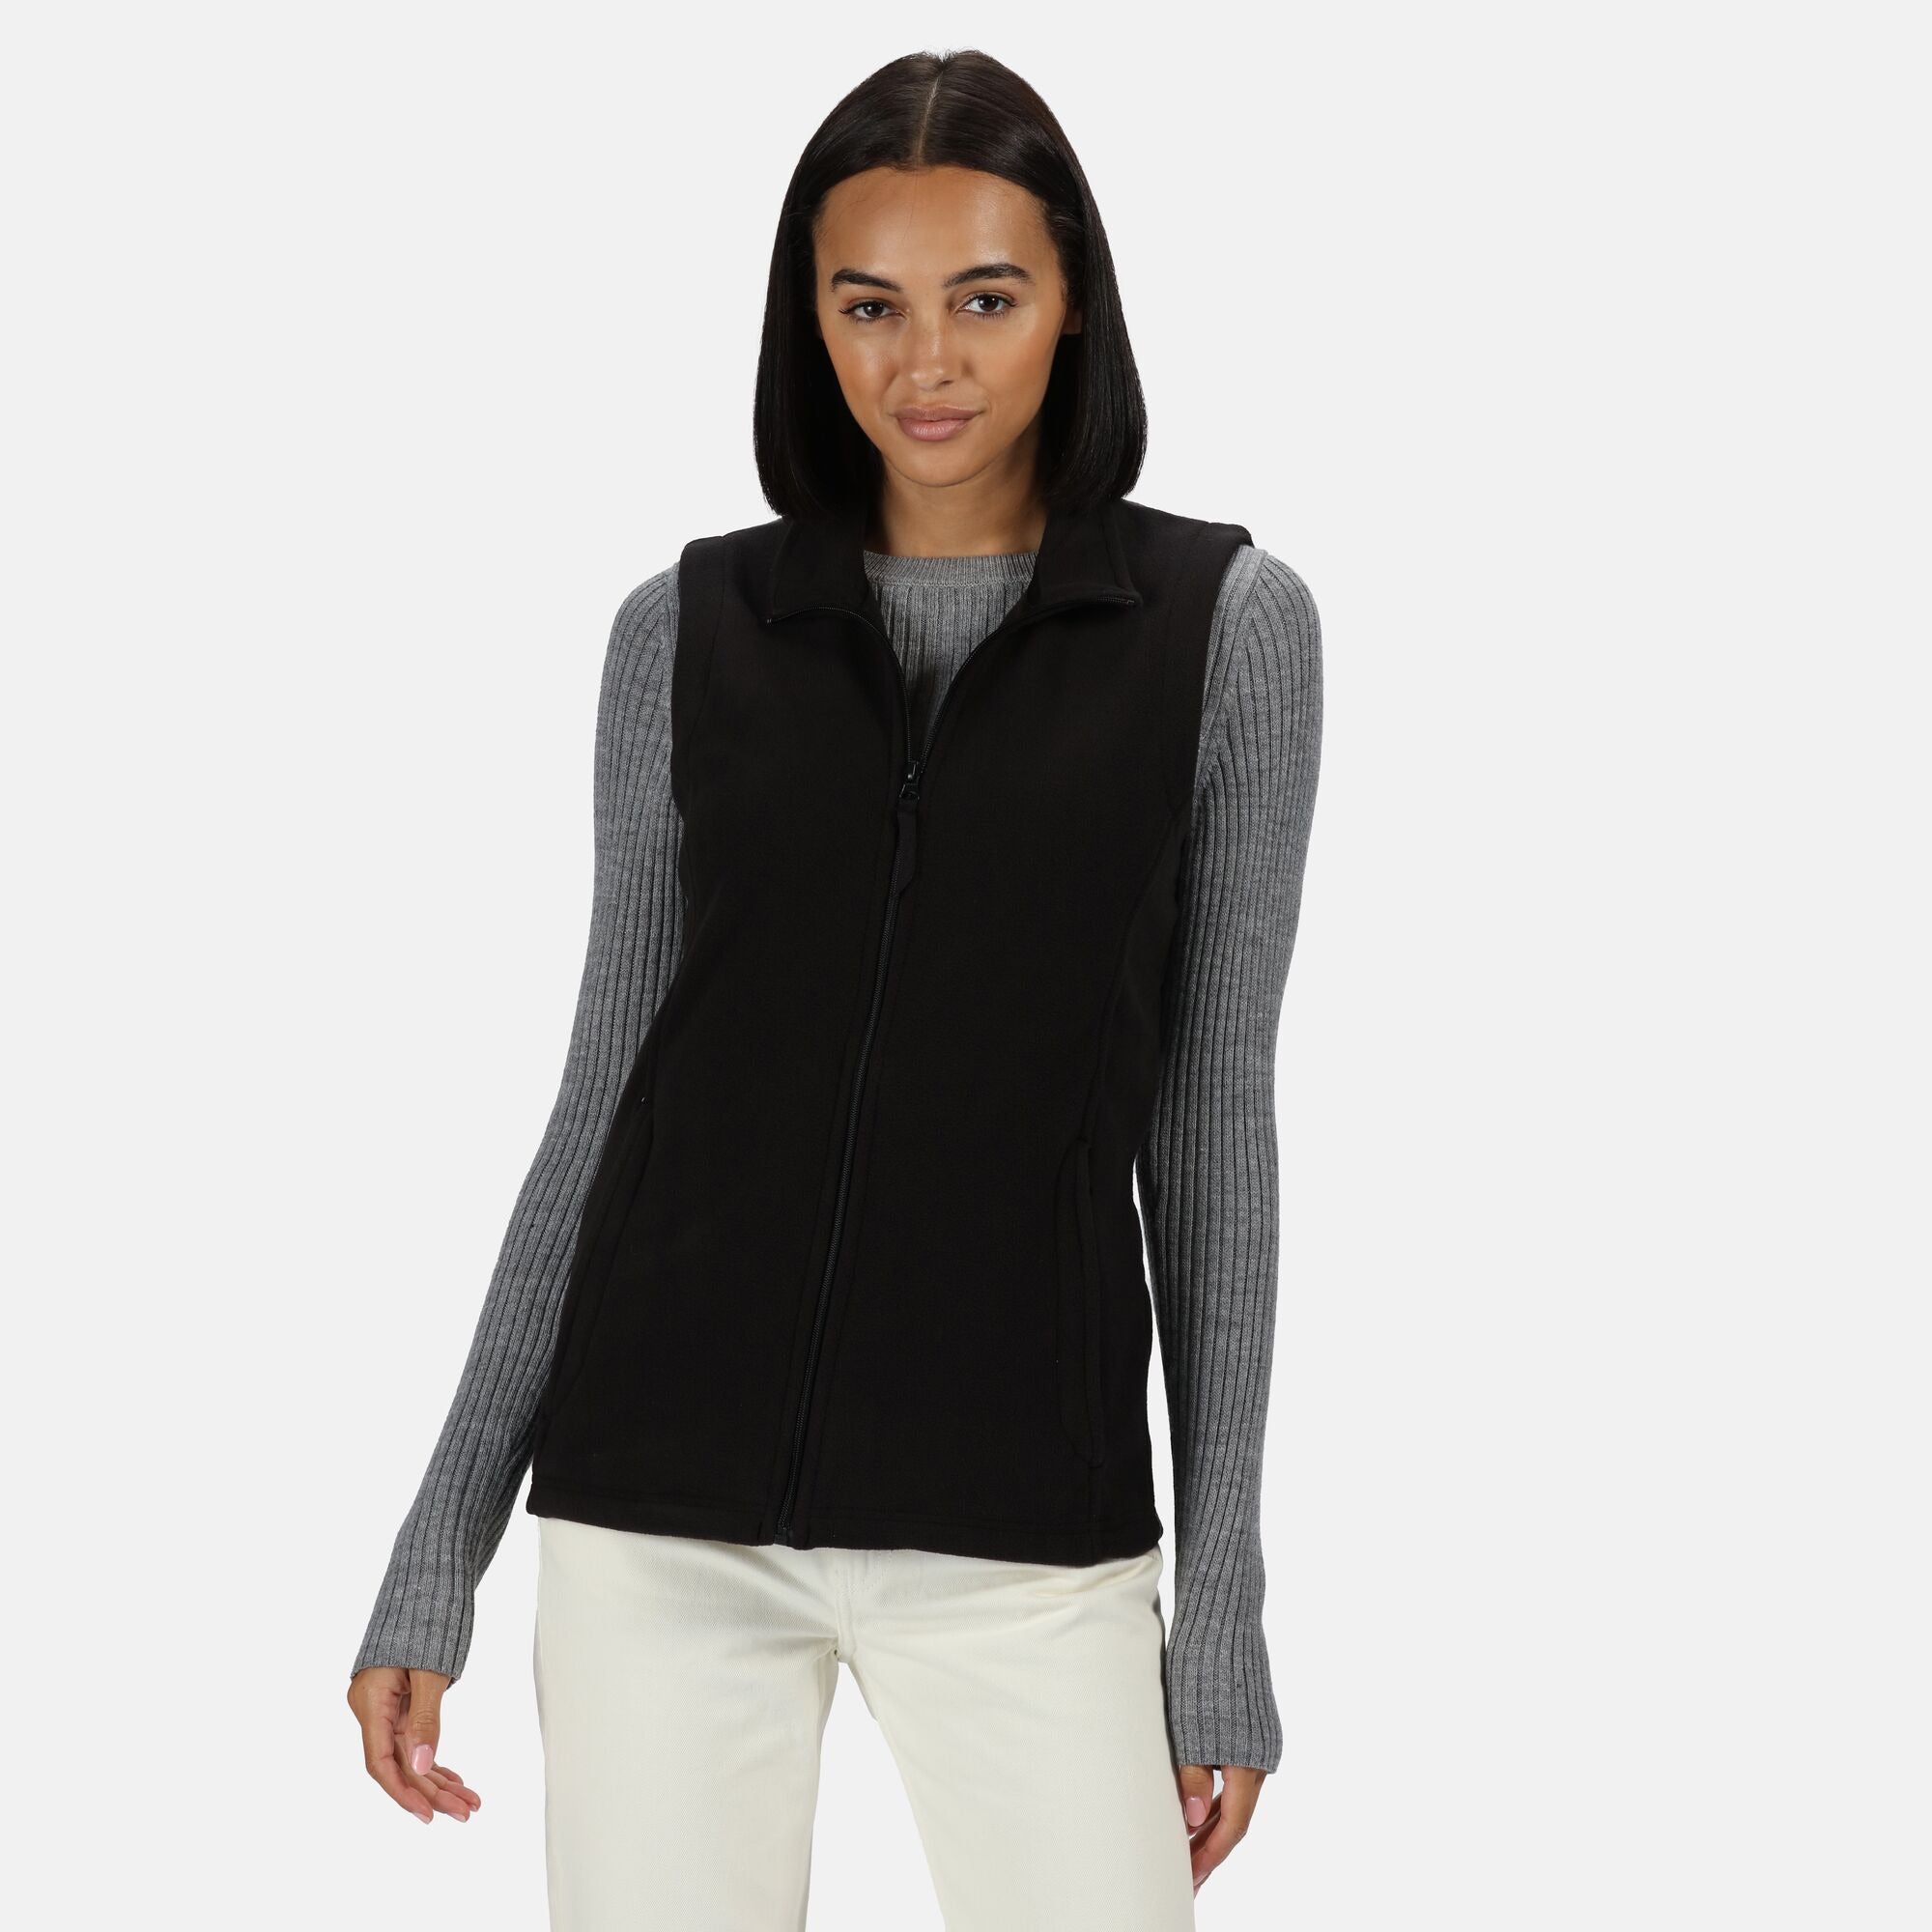 Regatta Women's Black Micro Fleece zipped pockets Shaped fit Body warmer #TRA802